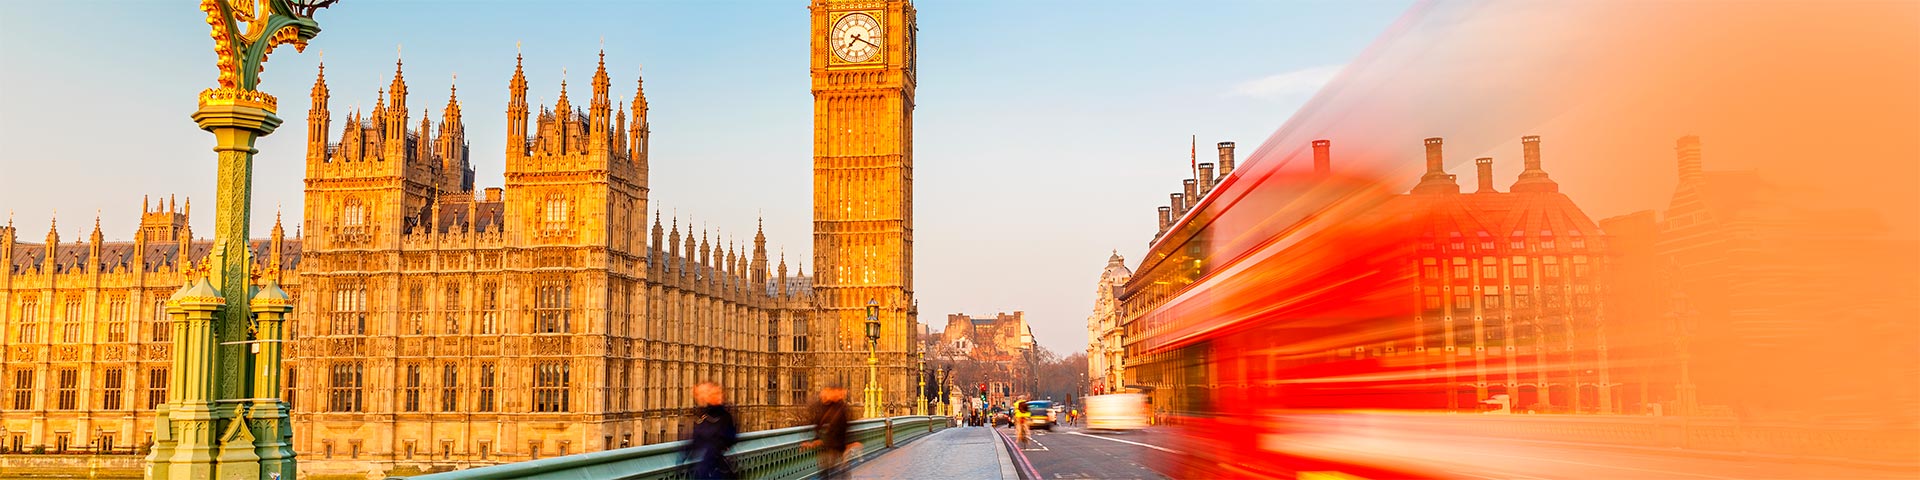 Englisch Übersetzung: Big Ben und Doppeldecker Bus in London, Vereinigtes Königreich